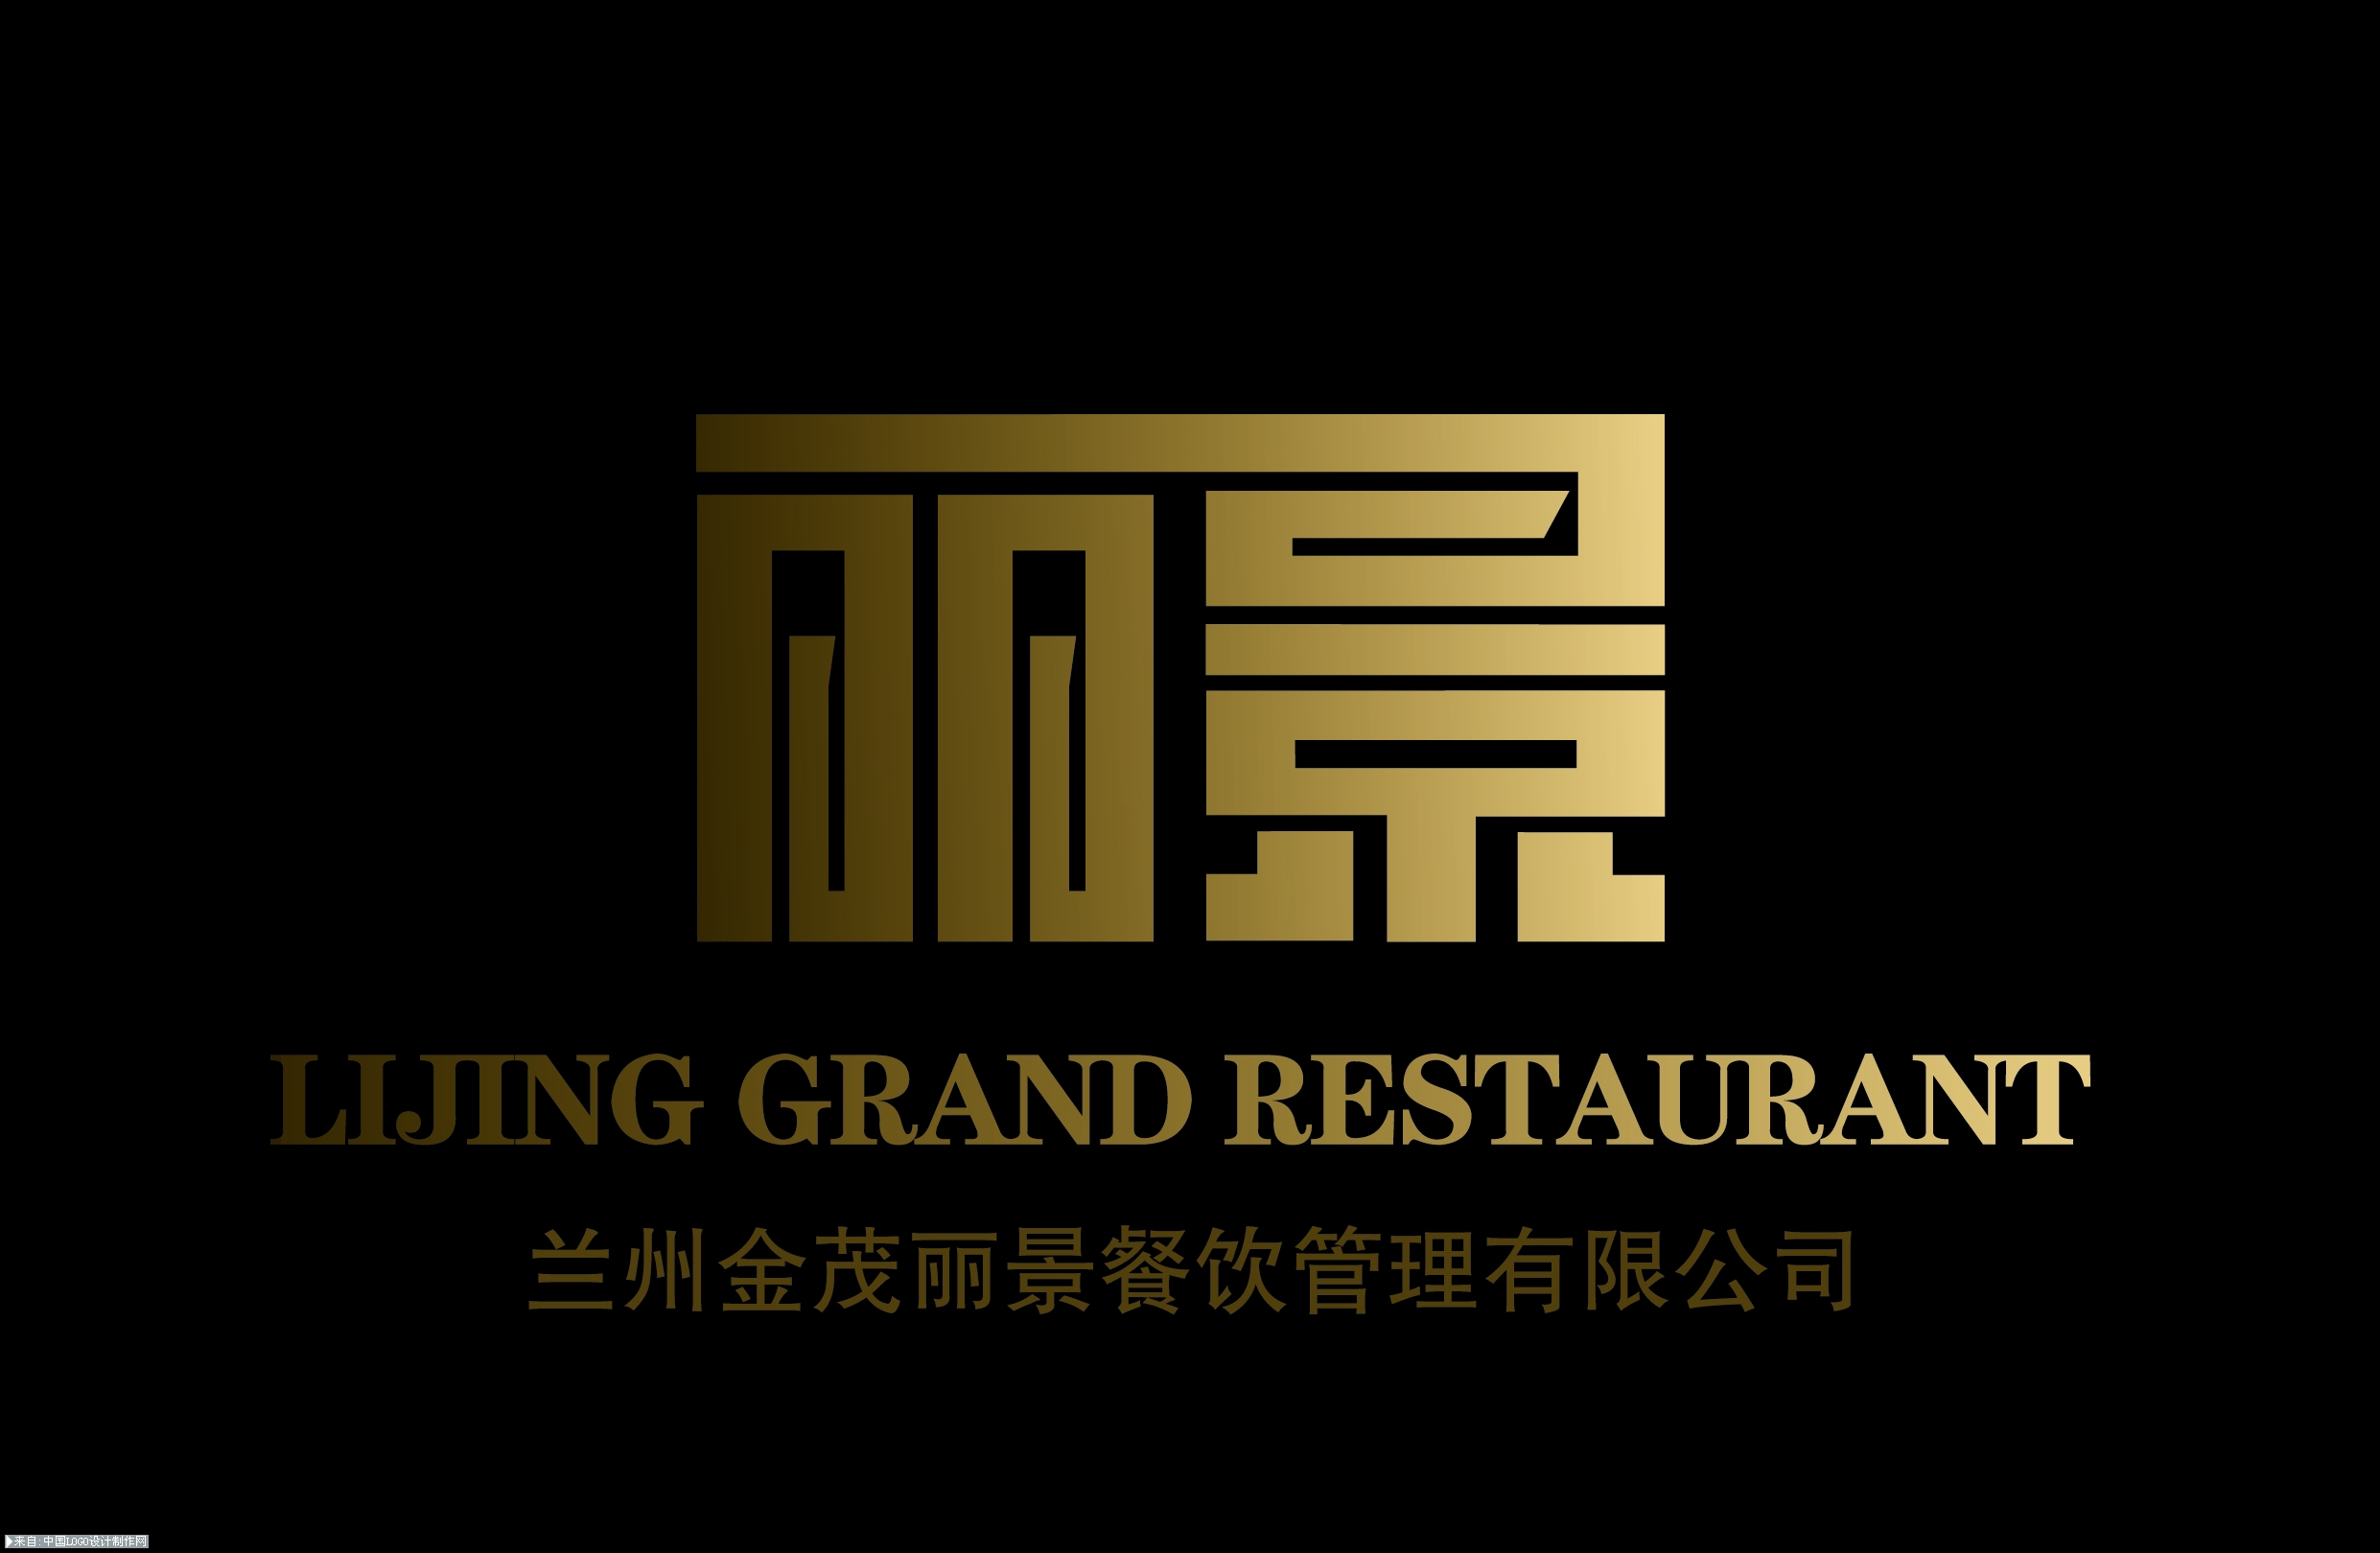 兰州丽景大酒店logo设计